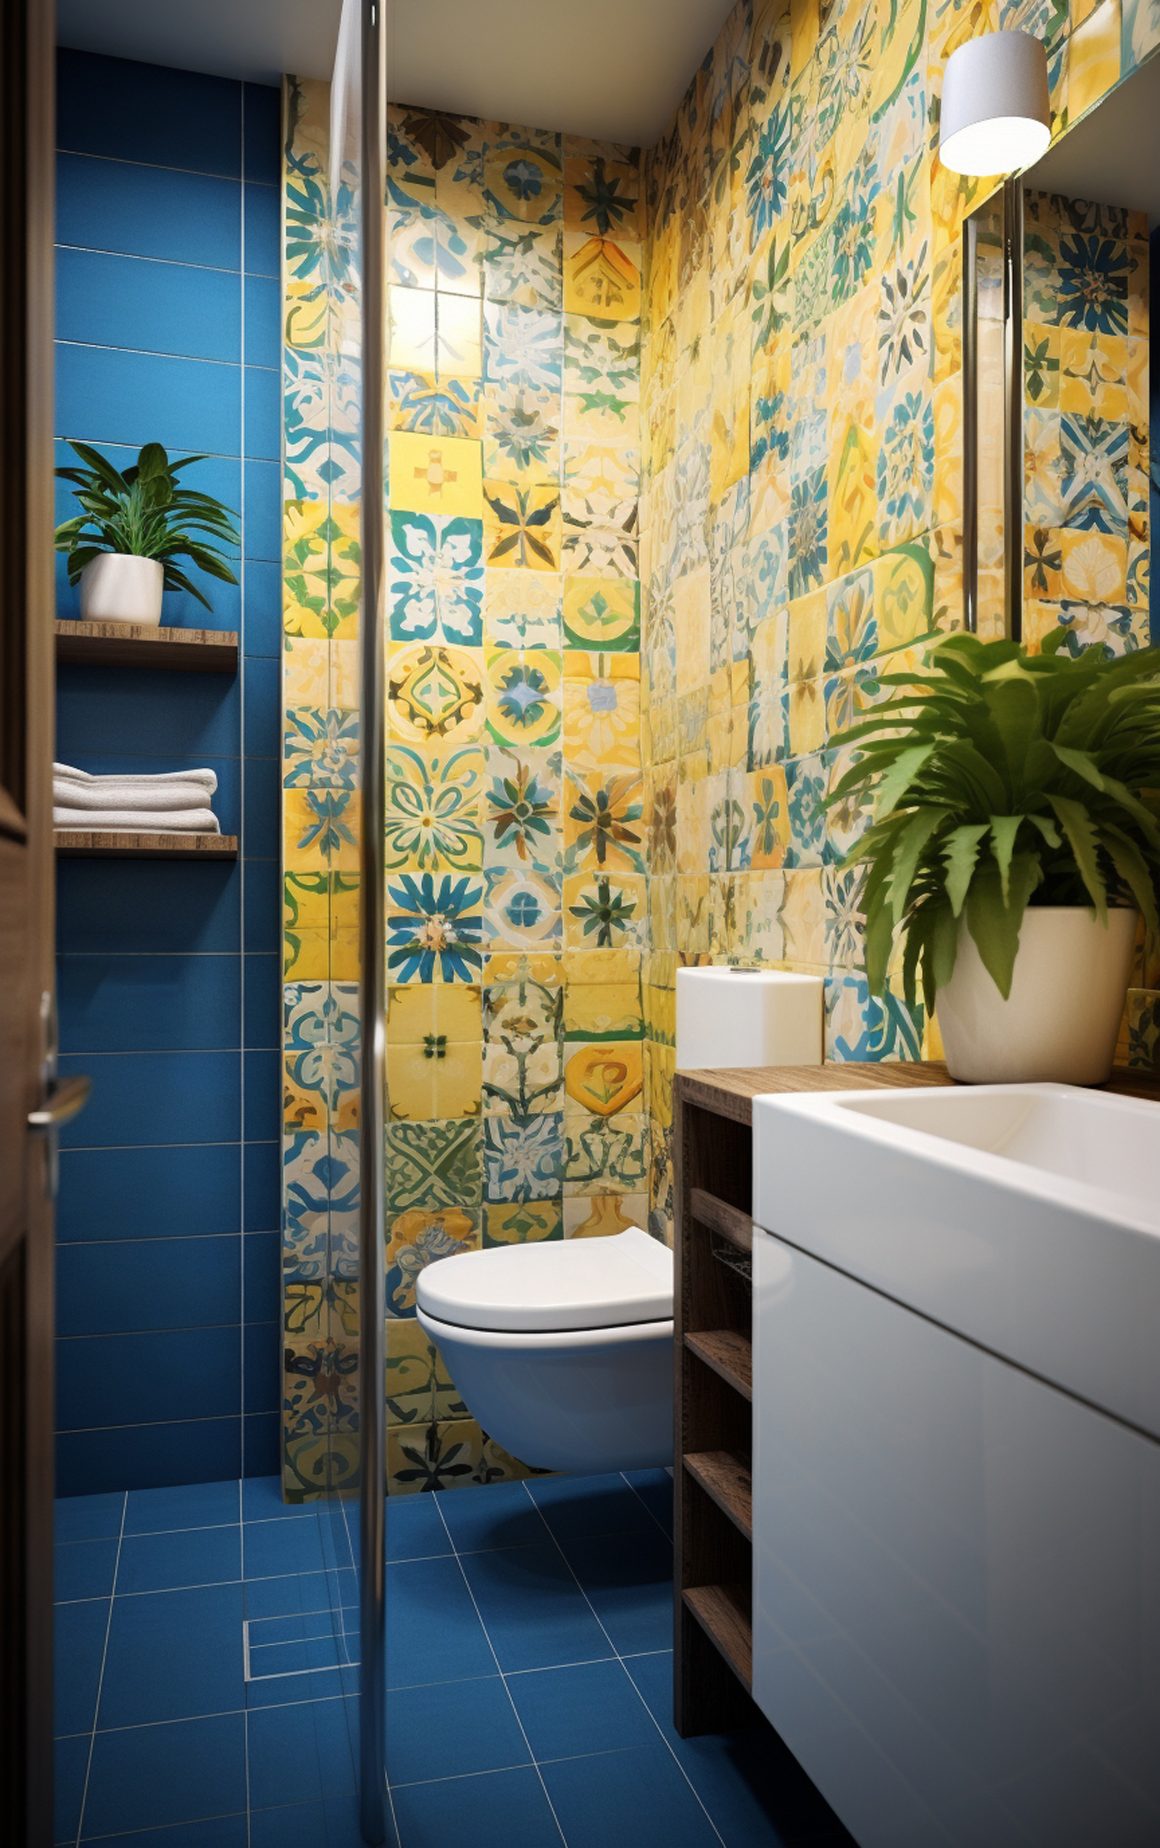 salle de bains exotique avec carreaux jaune et bleu avec plantes et accents modernes